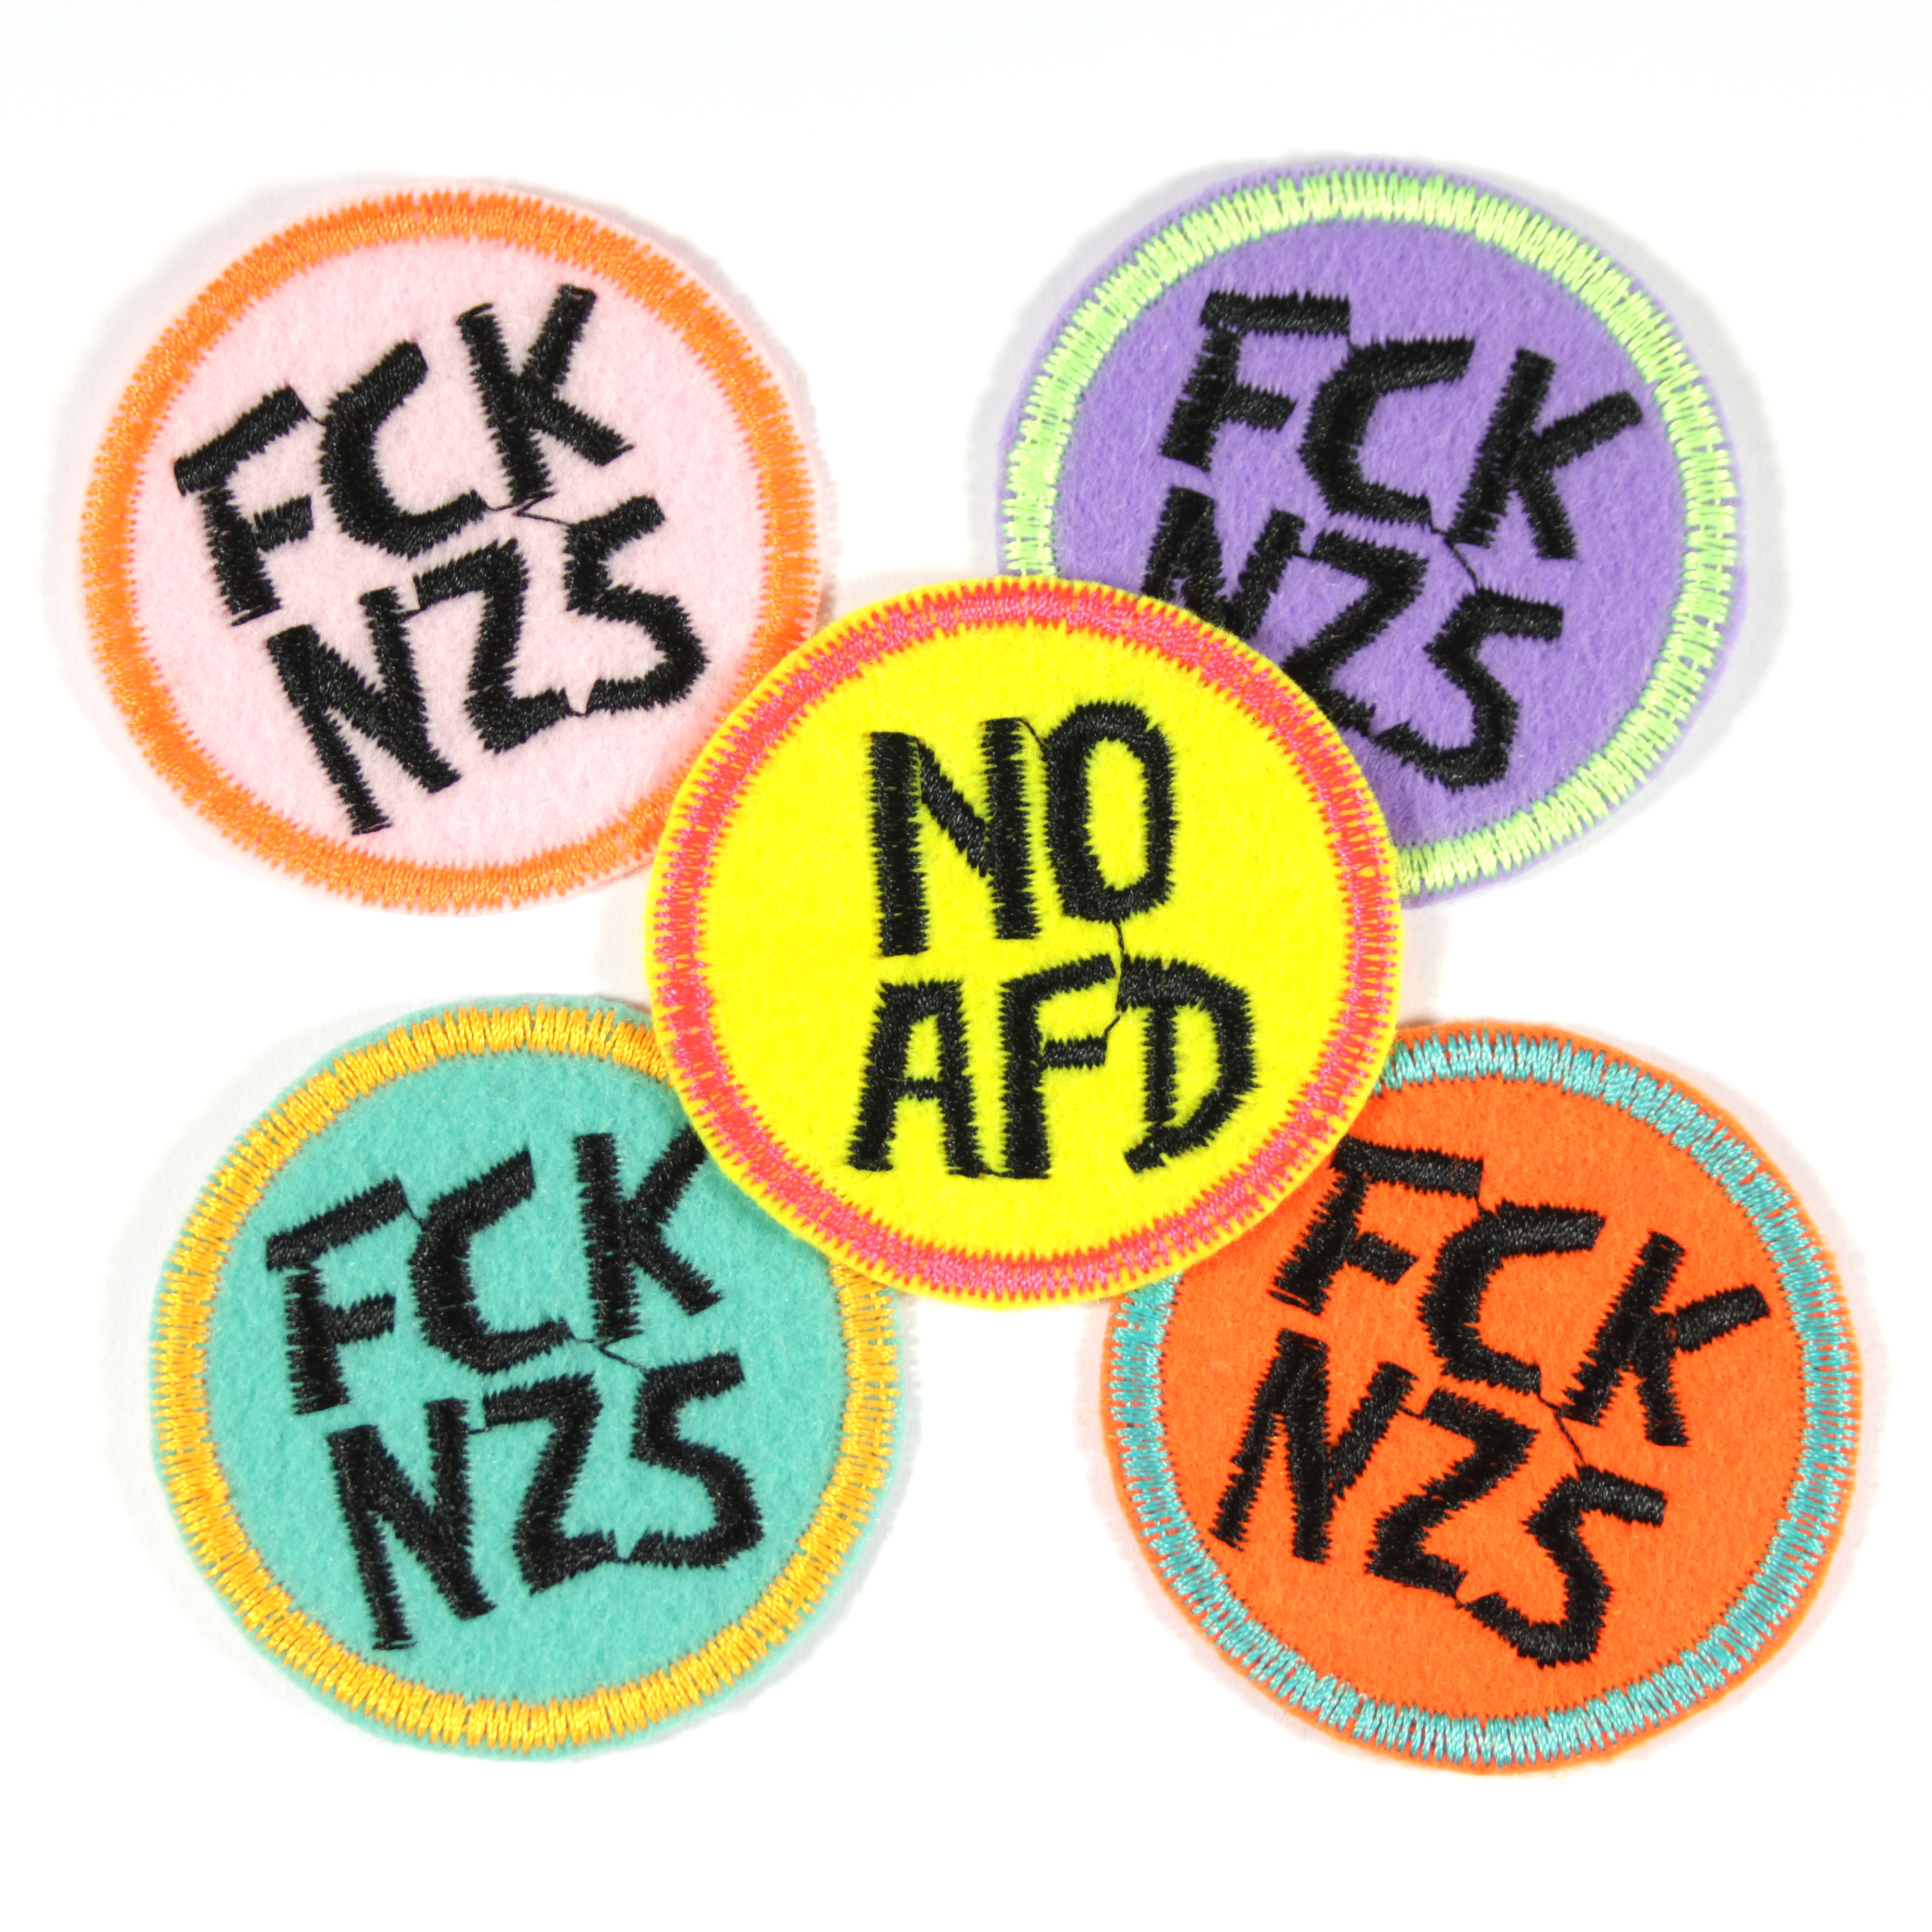 5 Aufnäher rund FCK NZS & NO AFD auf türkis, lila, pink, orange & gelb mit neon buntem rand